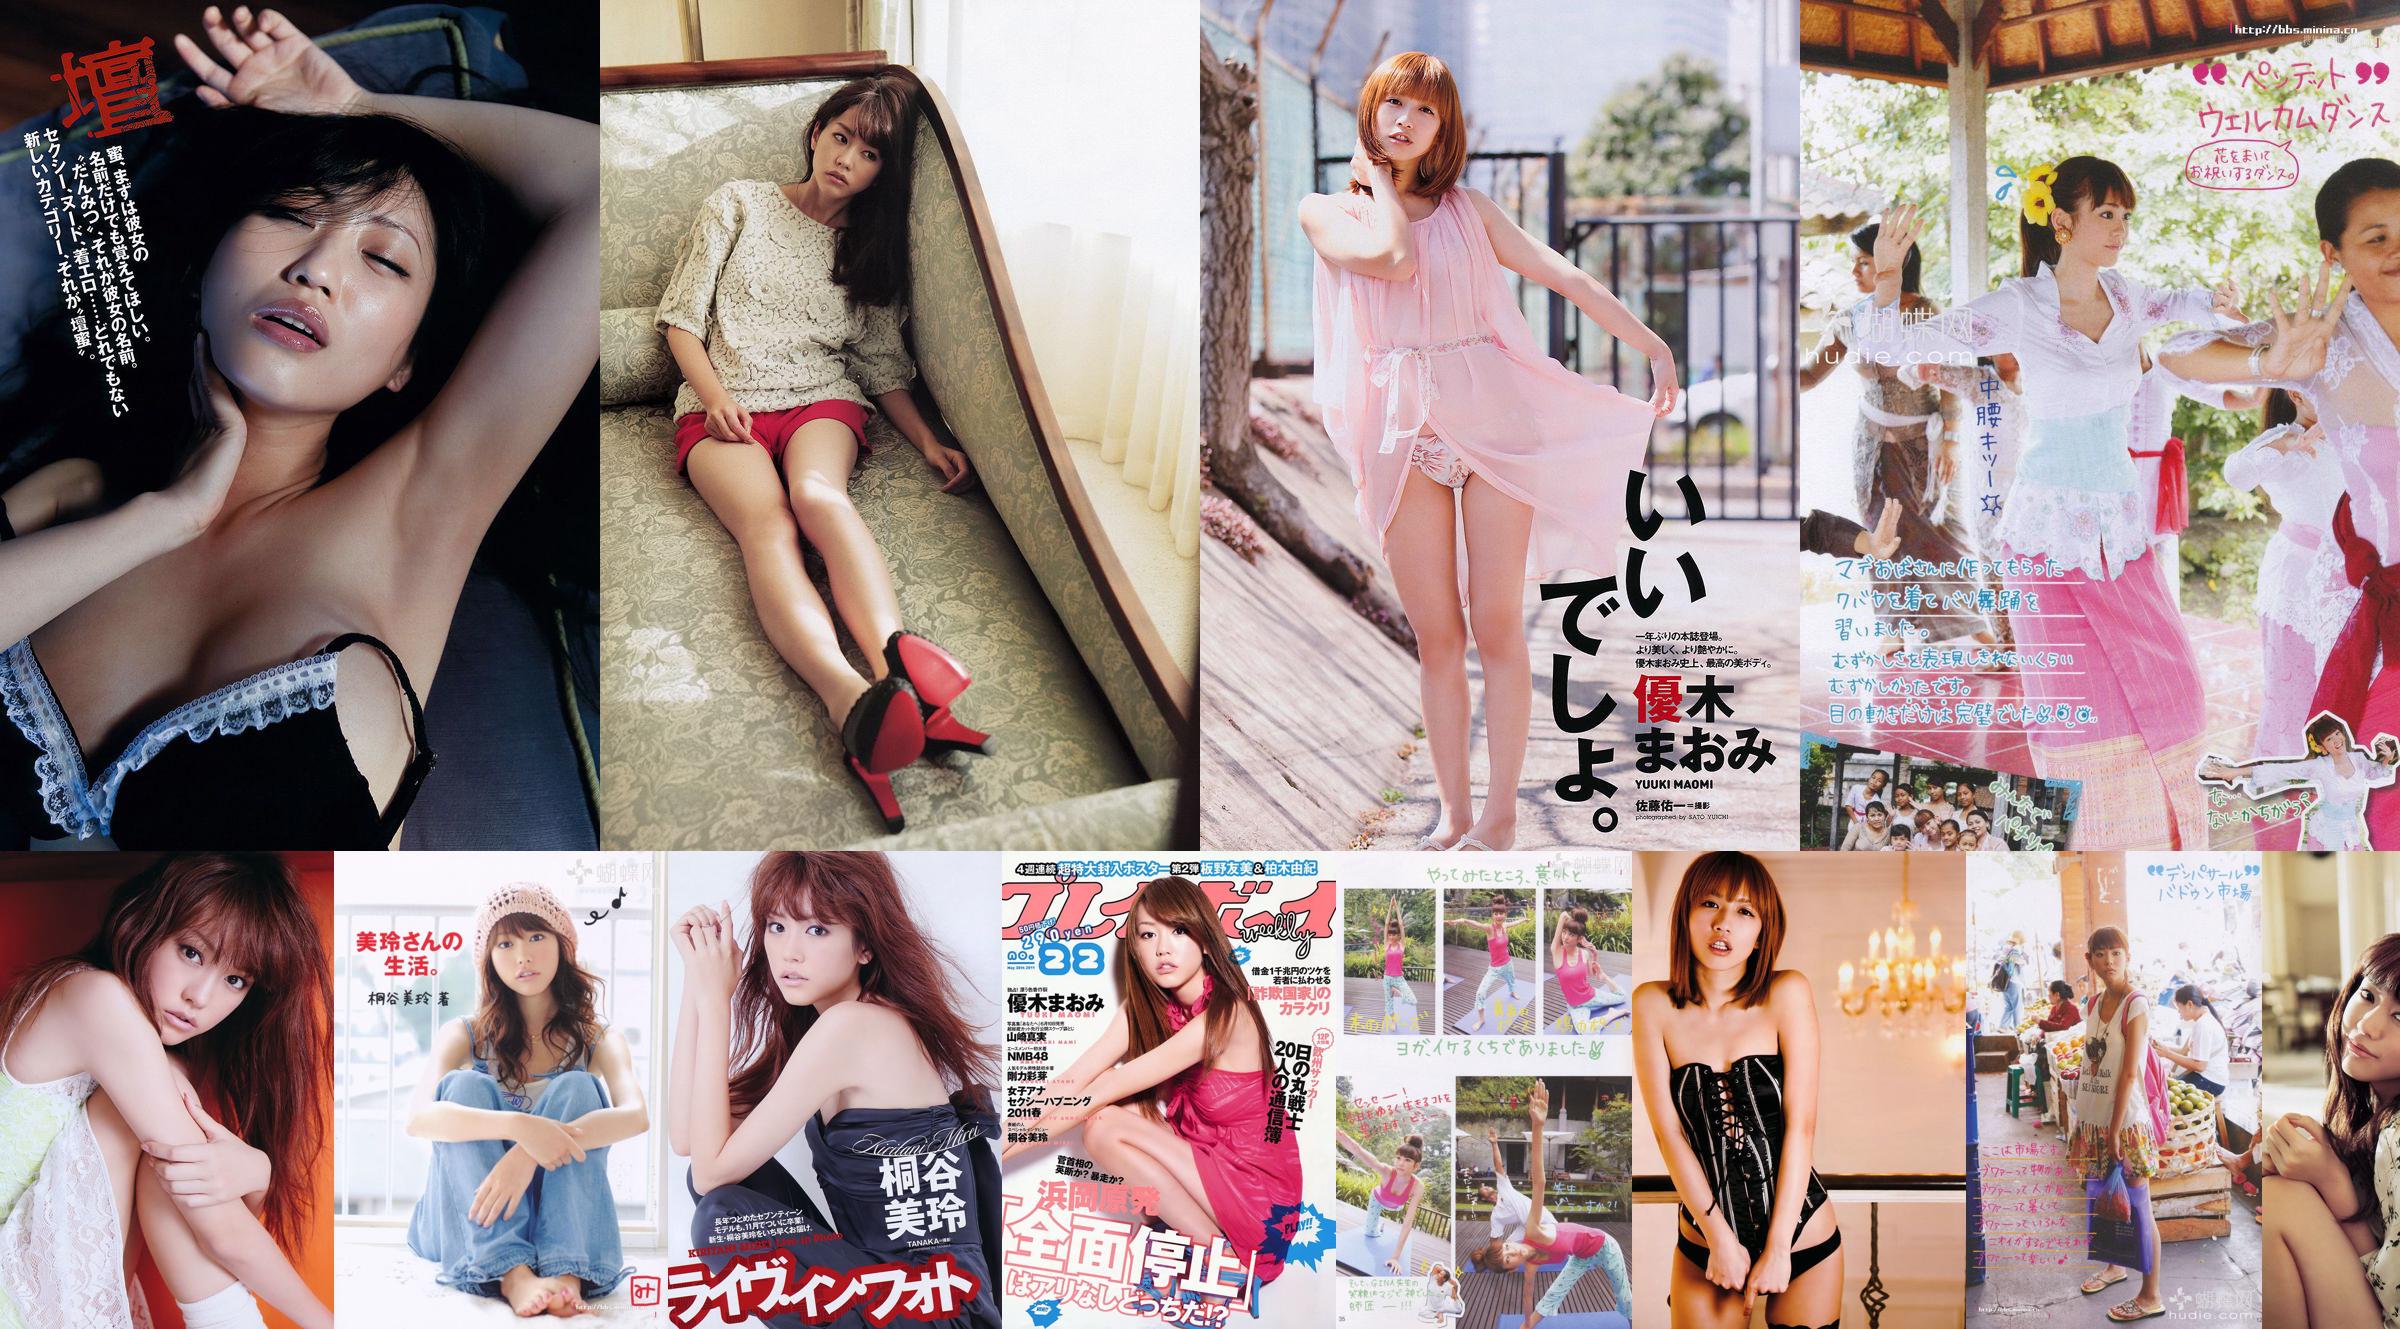 키리타니 미레 아키 니토 미사키 타카하시 아이 아오키 AKB48 이케다 나츠키 [주간 플레이 보이] 2011 No.38 Photo Magazine No.783fab 페이지 1